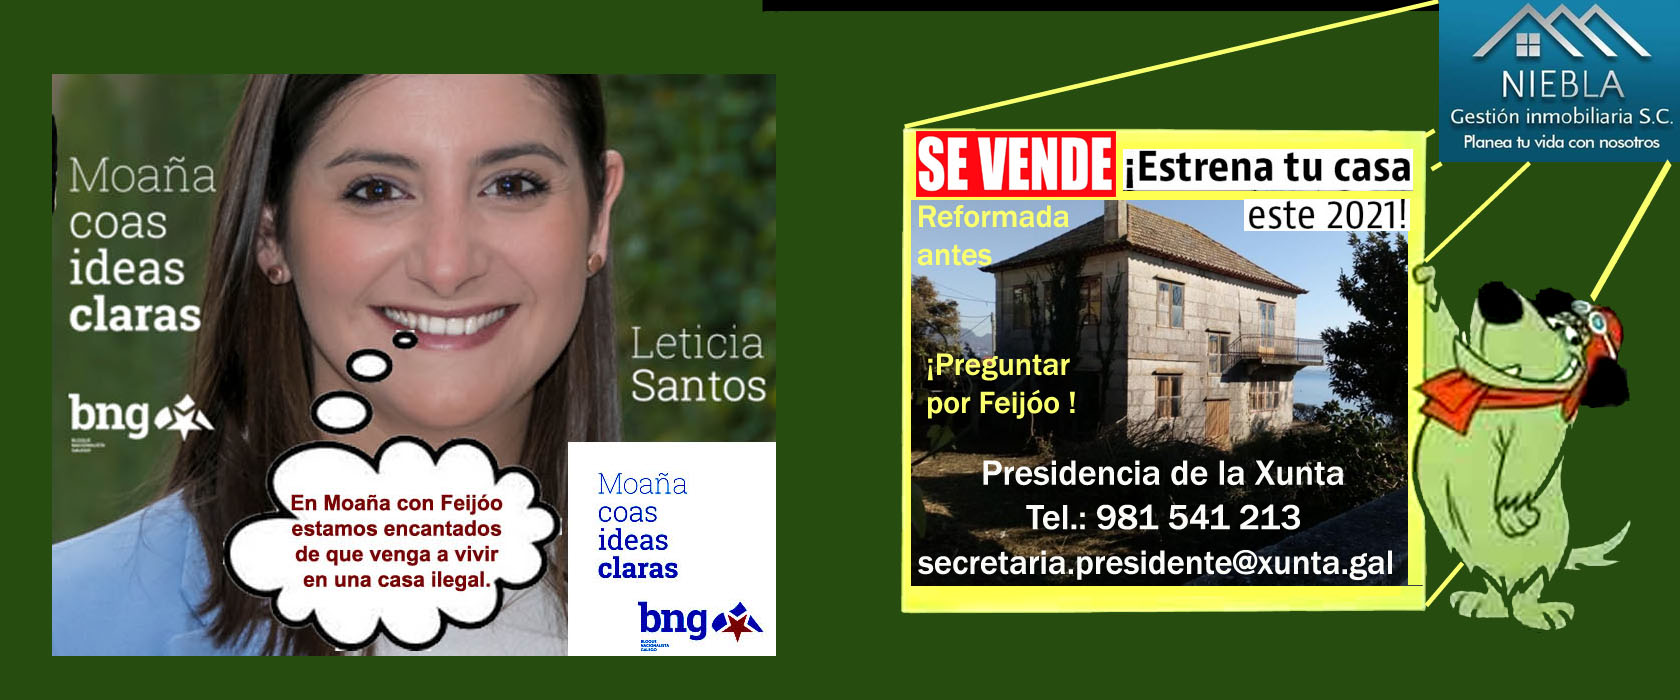 PLADESEMAPESGA exige la dimisión FULMINANTE de la Alcaldesa de Moaña,  Leticia Santos Paz (BNG) por encubrir &amp;quot;supuestas ilegalidades&amp;quot; de Feijóo y  su pareja Eva Cardenas. | Xornal Galicia